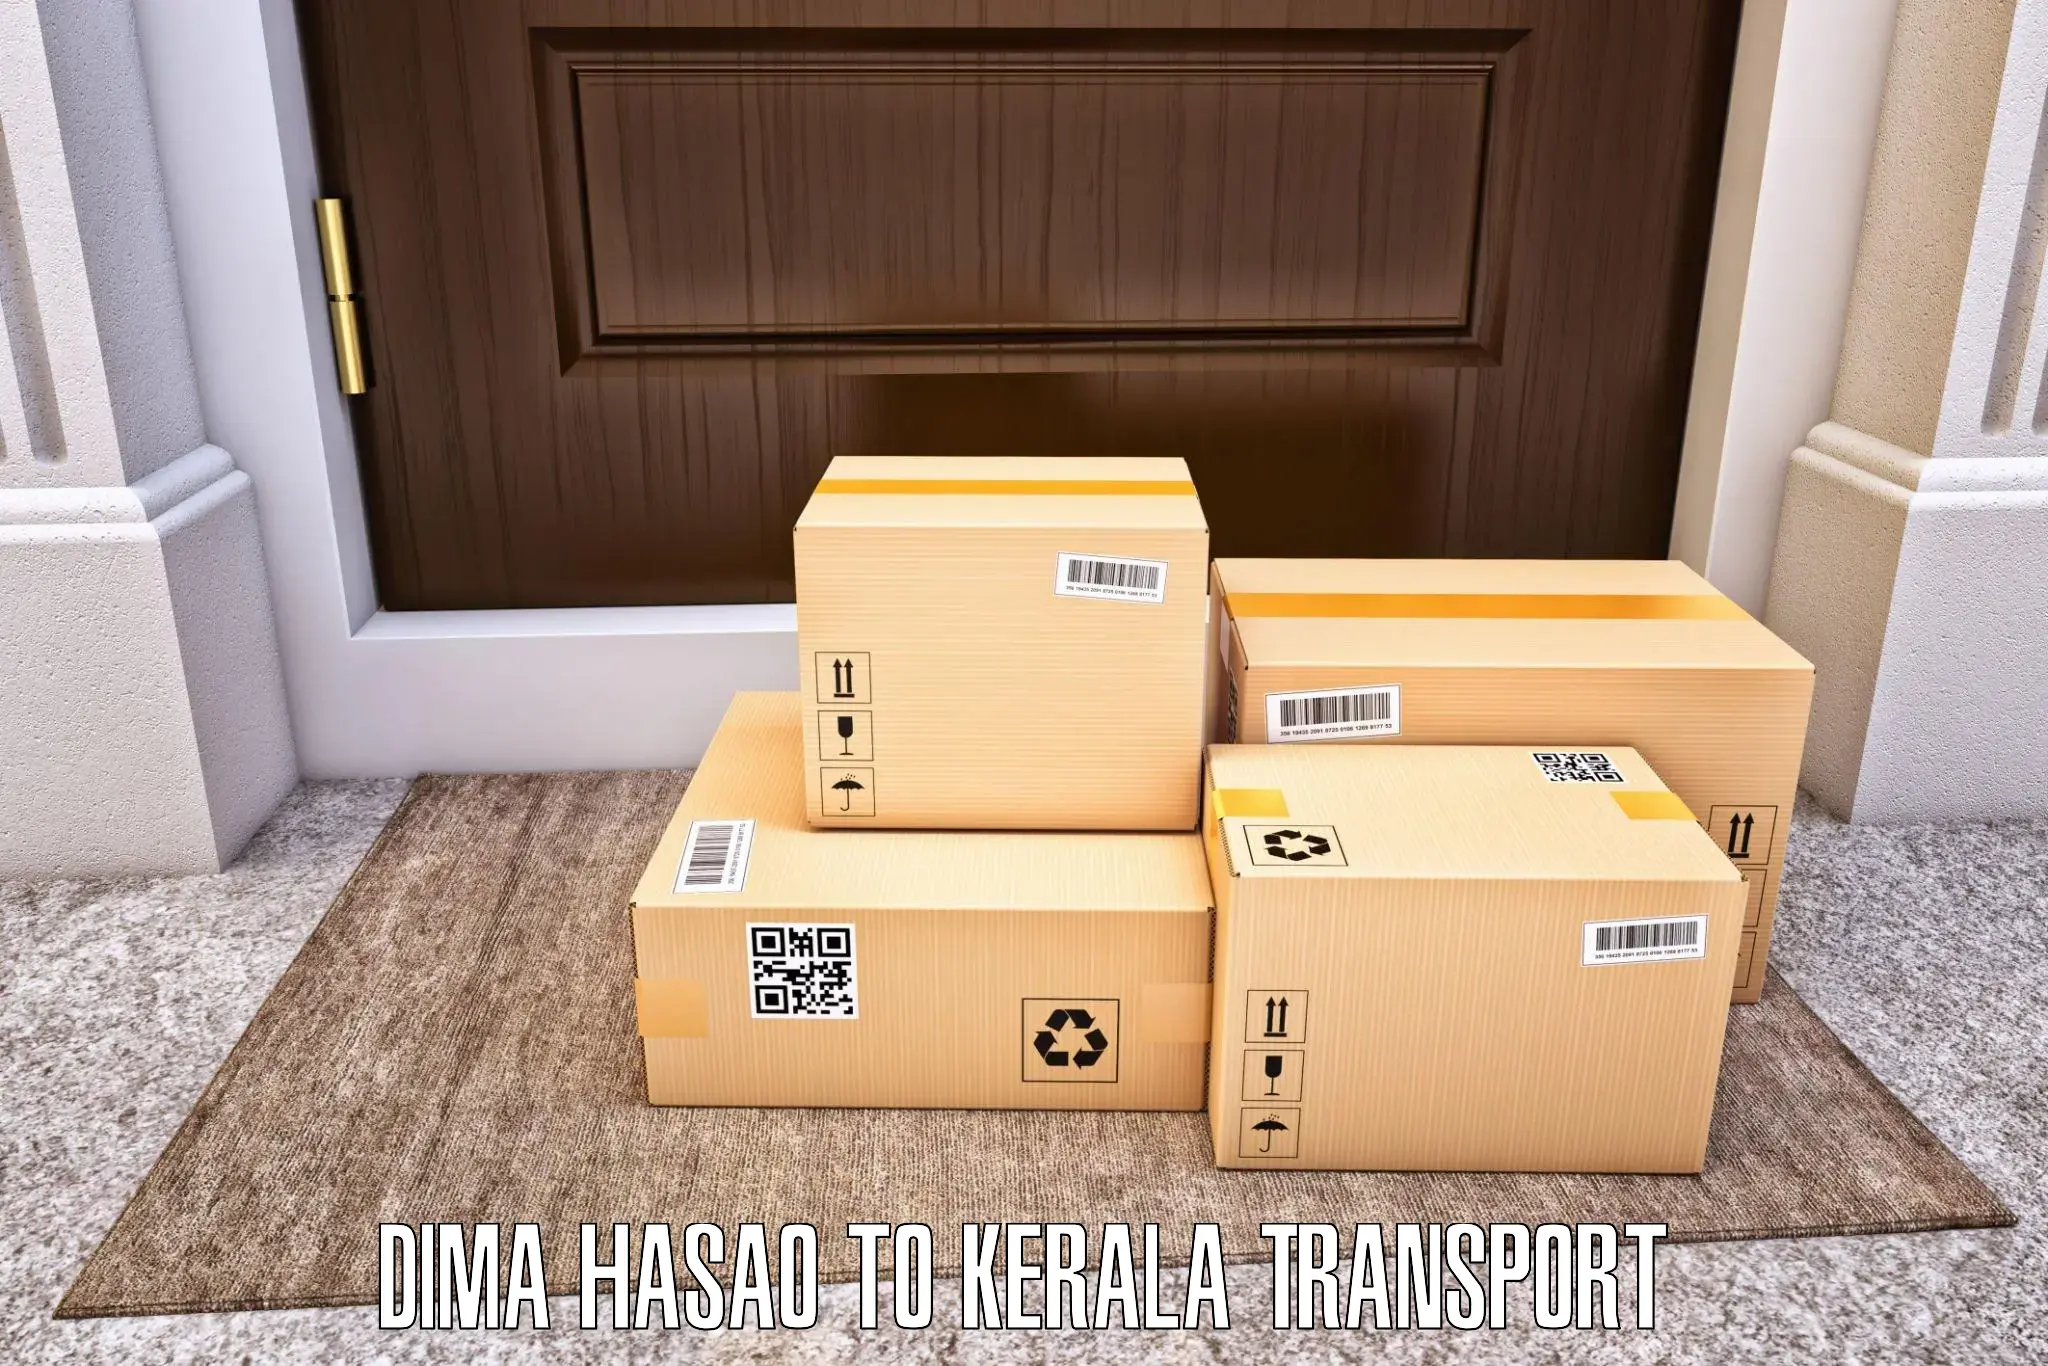 Shipping partner Dima Hasao to Chungatra